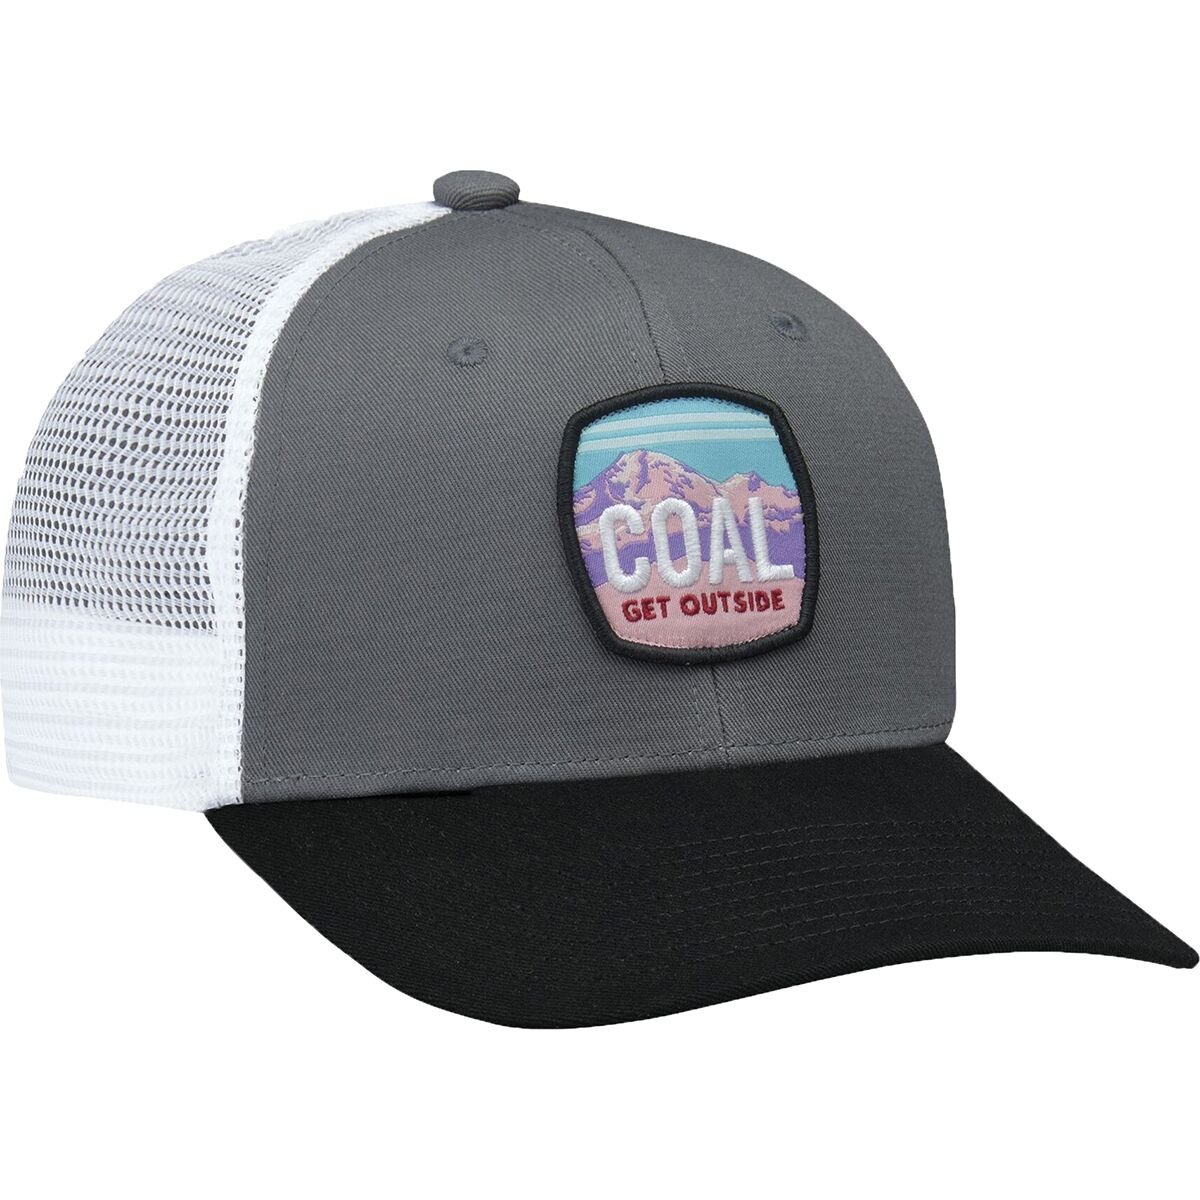 аналоговая шляпа coal headwear цвет fuchsia Кепка дальнобойщика тумало Coal Headwear, цвет charcoal